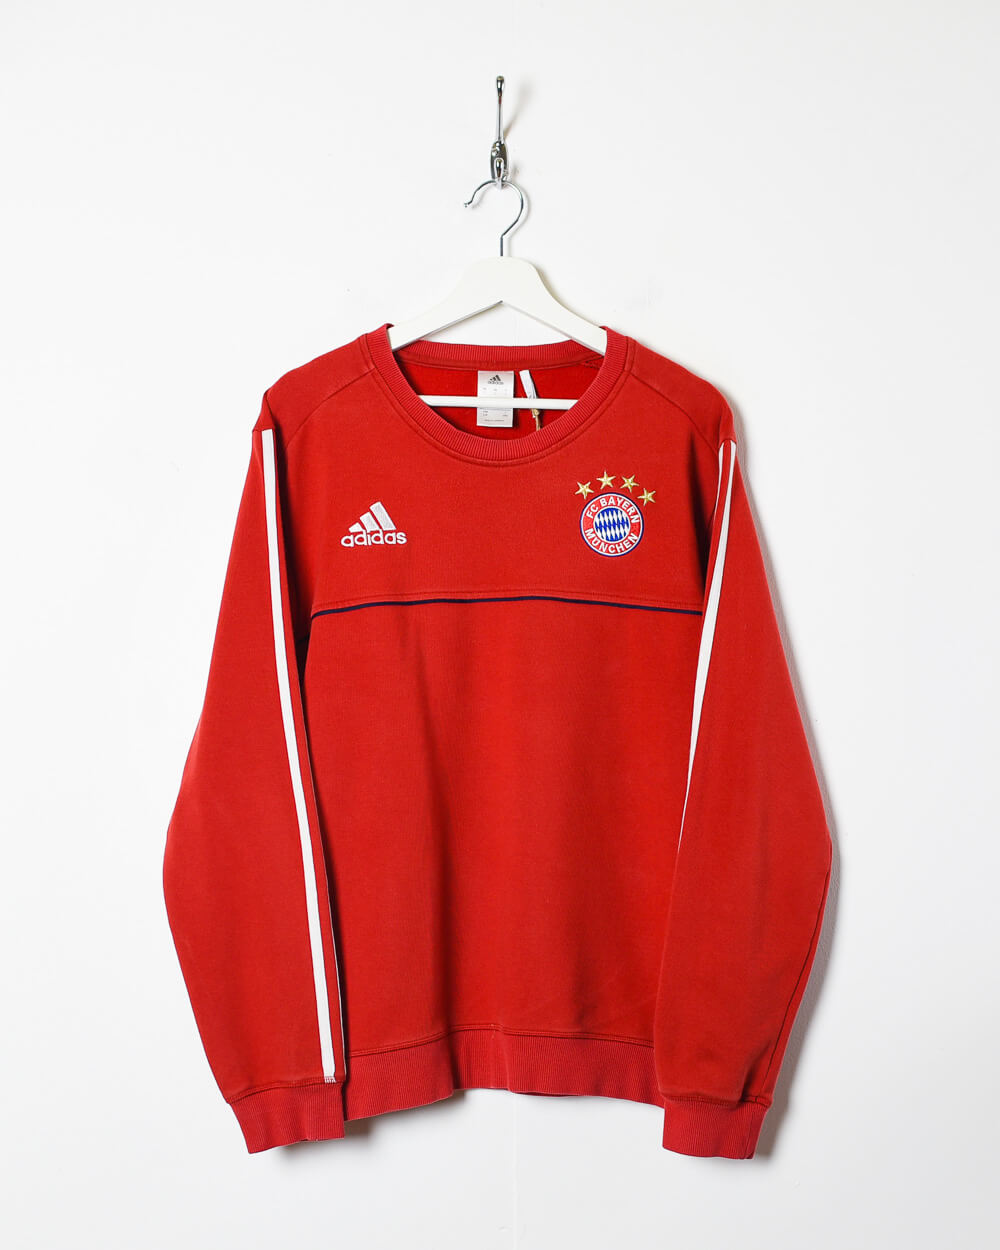 Red Adidas 2013 FC Bayern Munich Training Sweatshirt - Medium